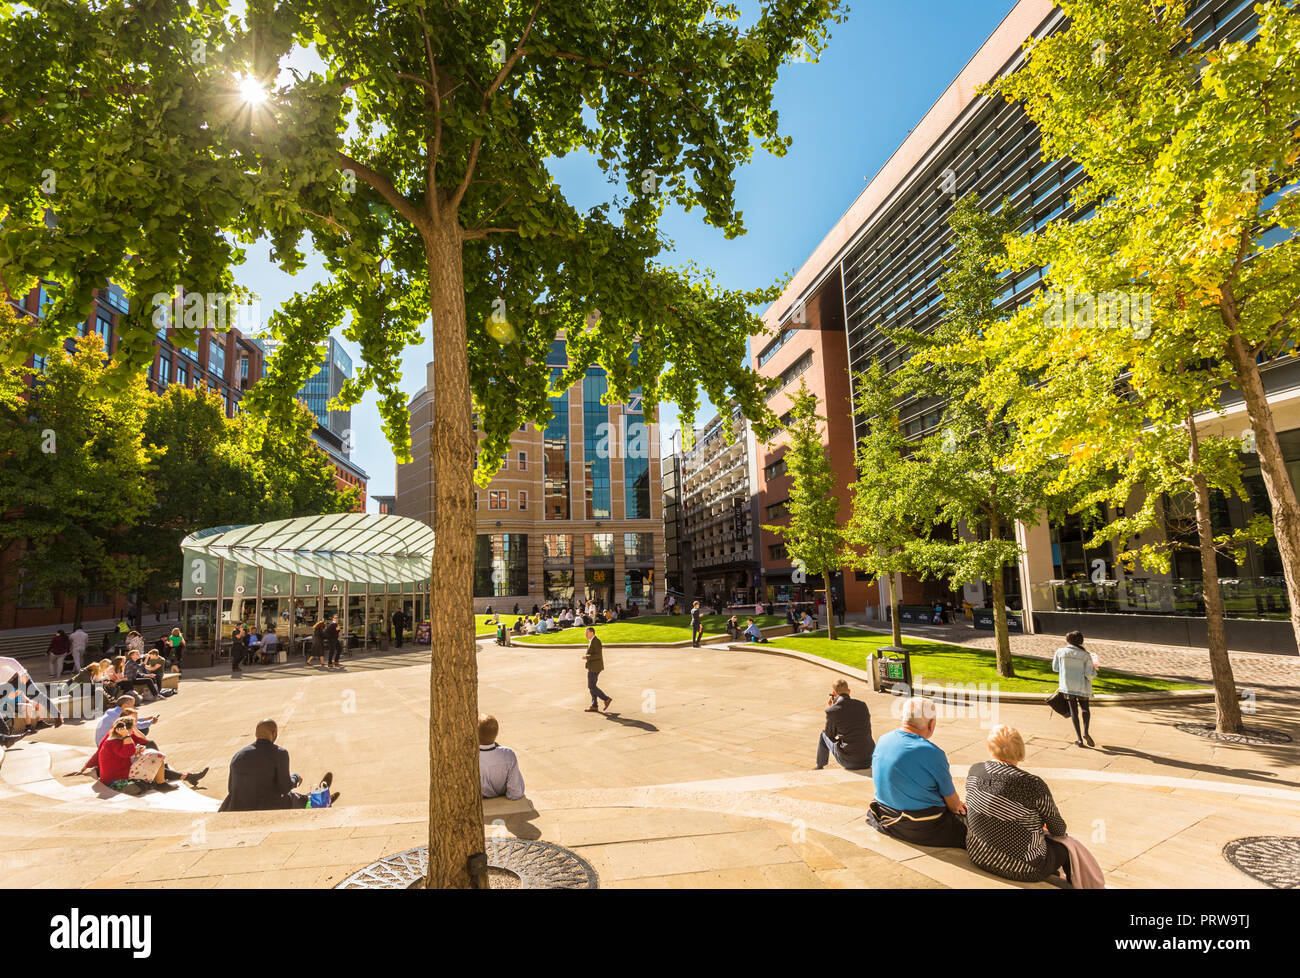 Zentraler Platz, Brindley Place, mit Menschen entspannend im späten Sommer Sonnenschein und Wärme, Birmingham, Großbritannien Stockfoto